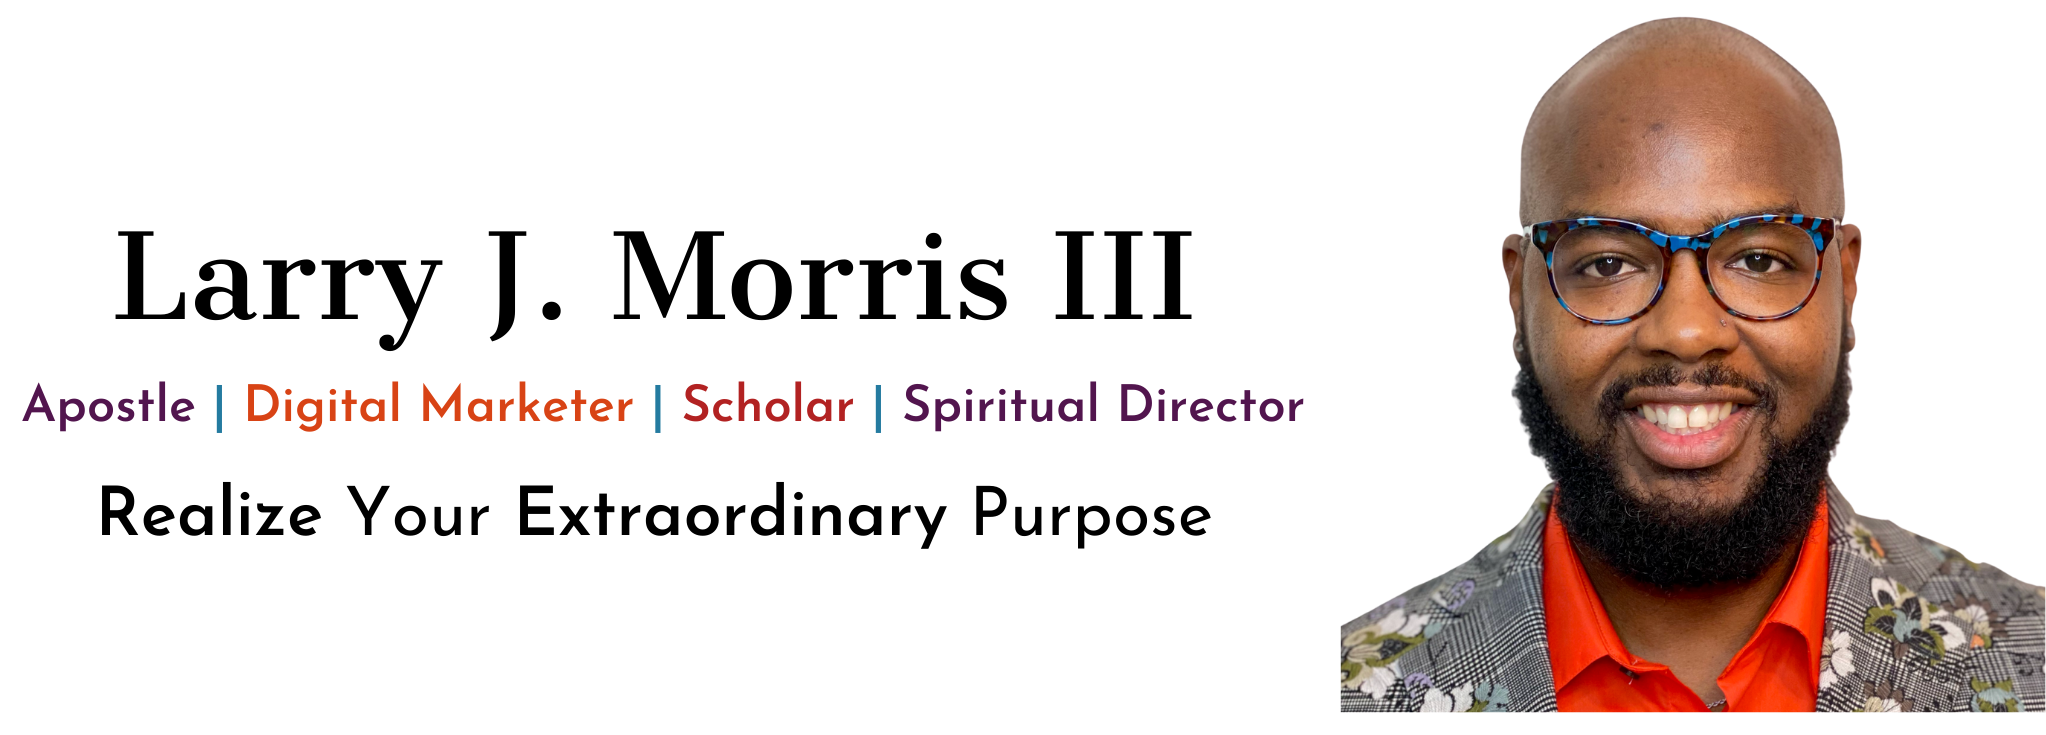 Larry J. Morris III, LLC